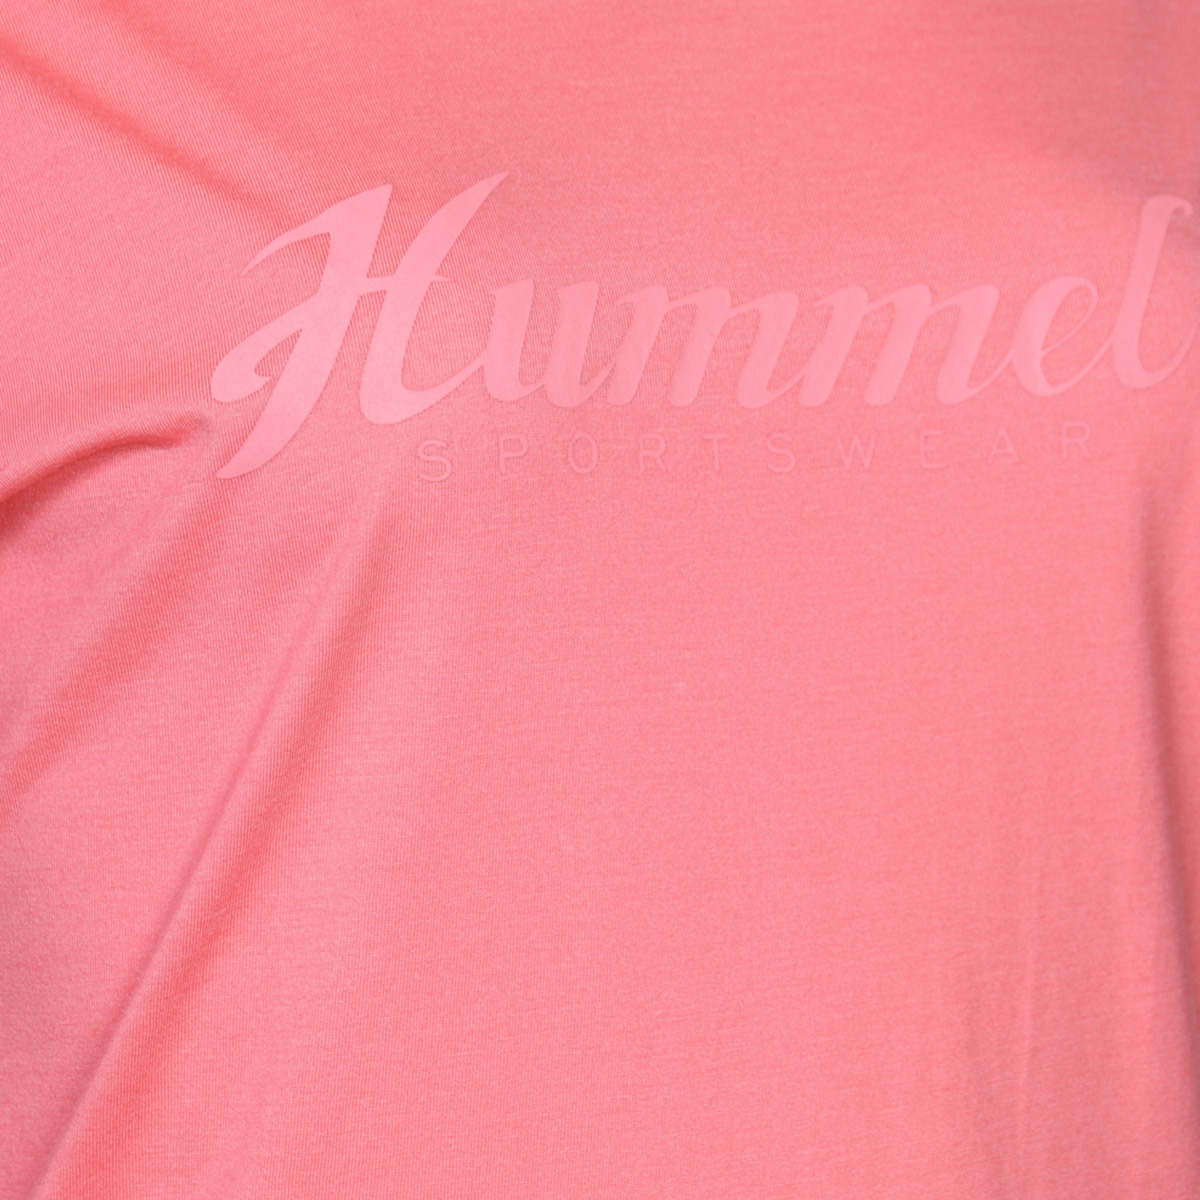 Flo HMLFERIN  T-SHIRT S/S Çok Renkli Kadın Kısa Kol Tişört. 4